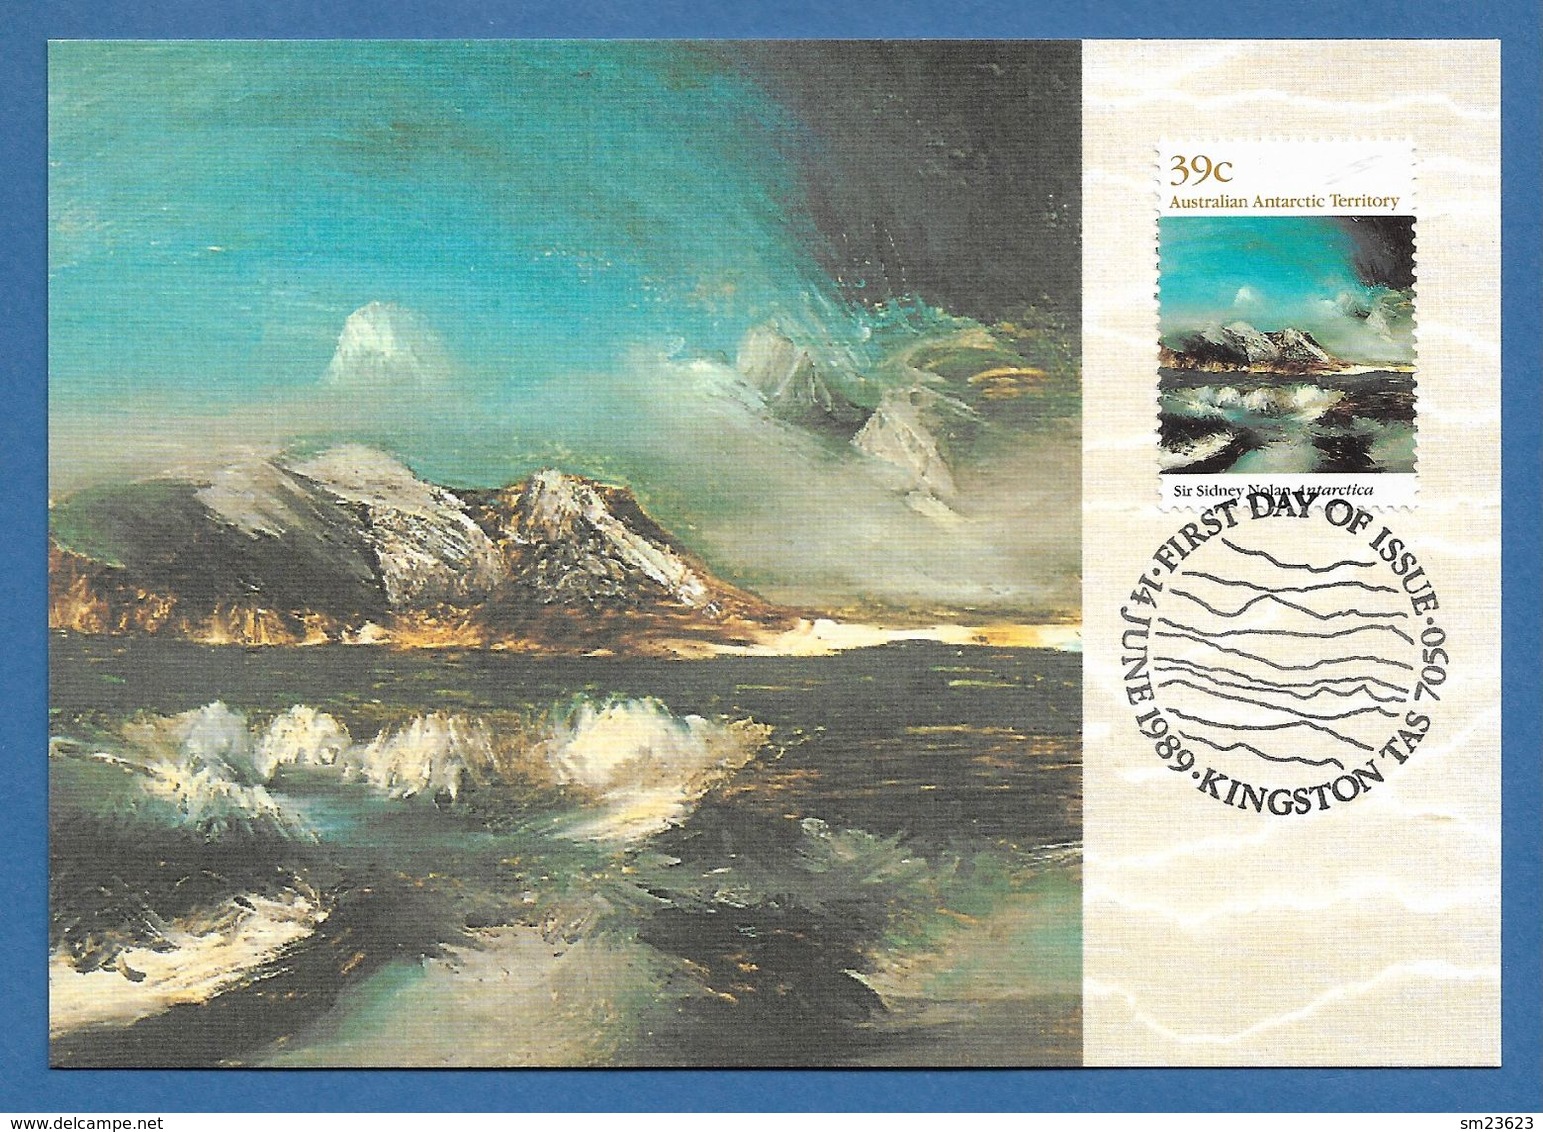 AAT  1989  Mi.Nr. 84 , Antarctica - Antarctic Landscape - Maximum Card - First Day Of Issue 14. June 1989 - Cartoline Maximum